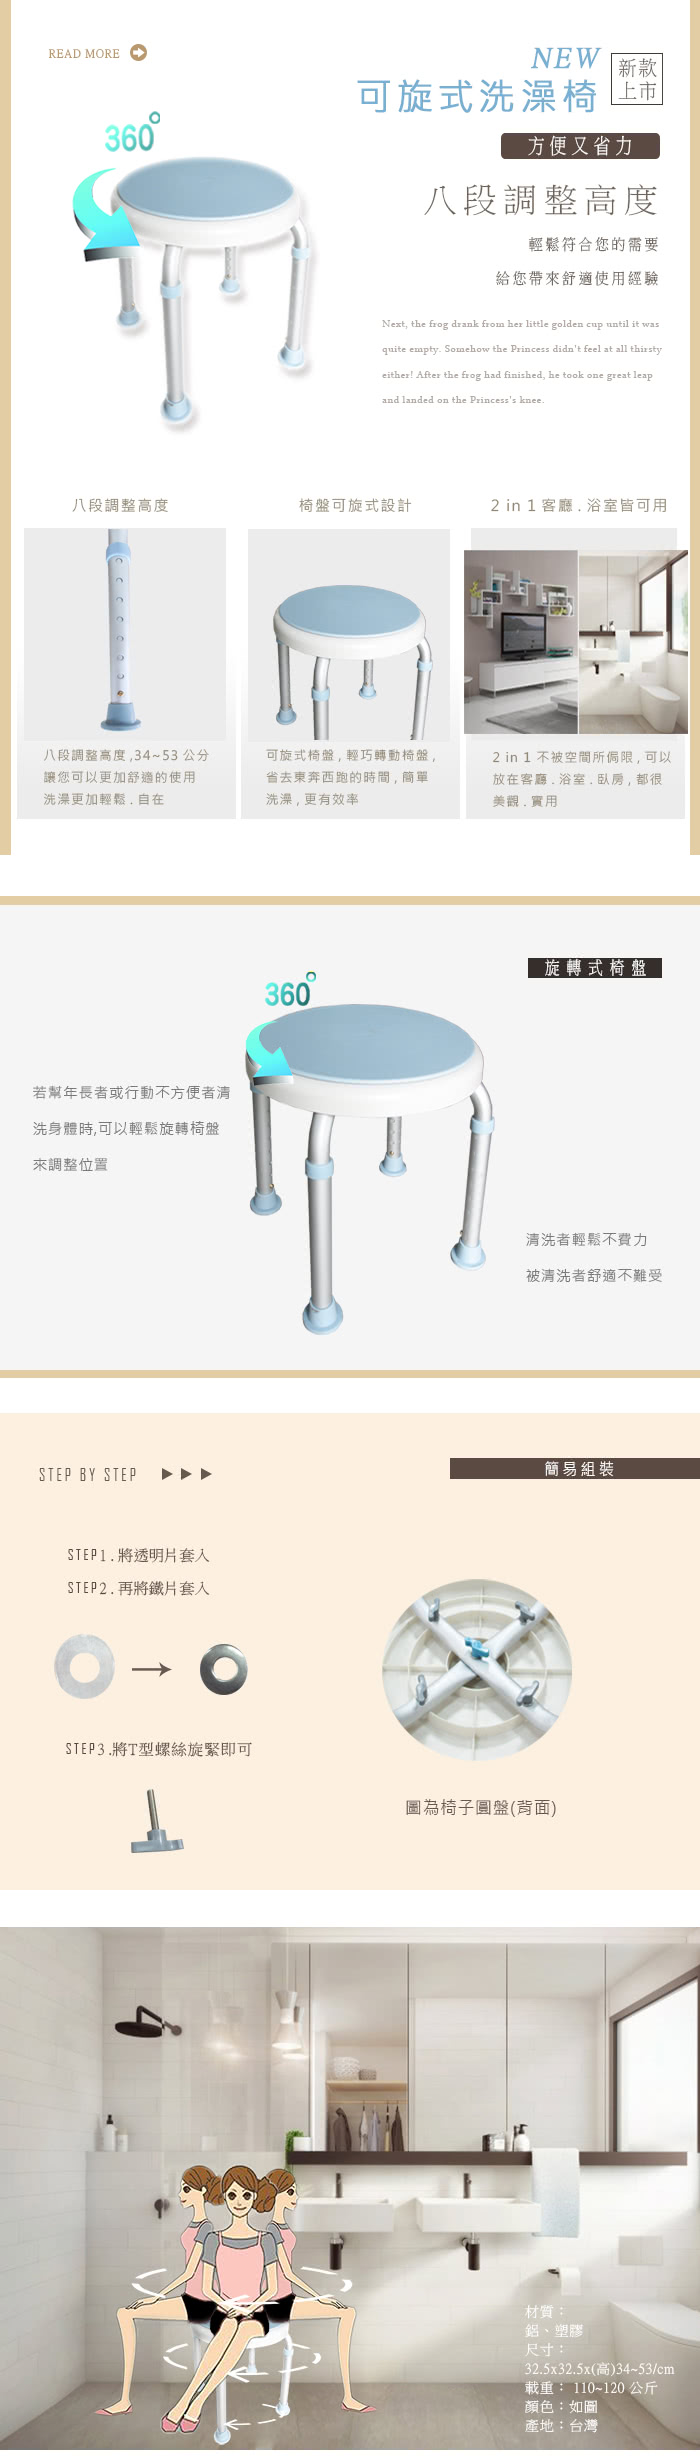 【舞動創意】輕量化鋁質可旋式360度防滑洗澡椅(天空藍)